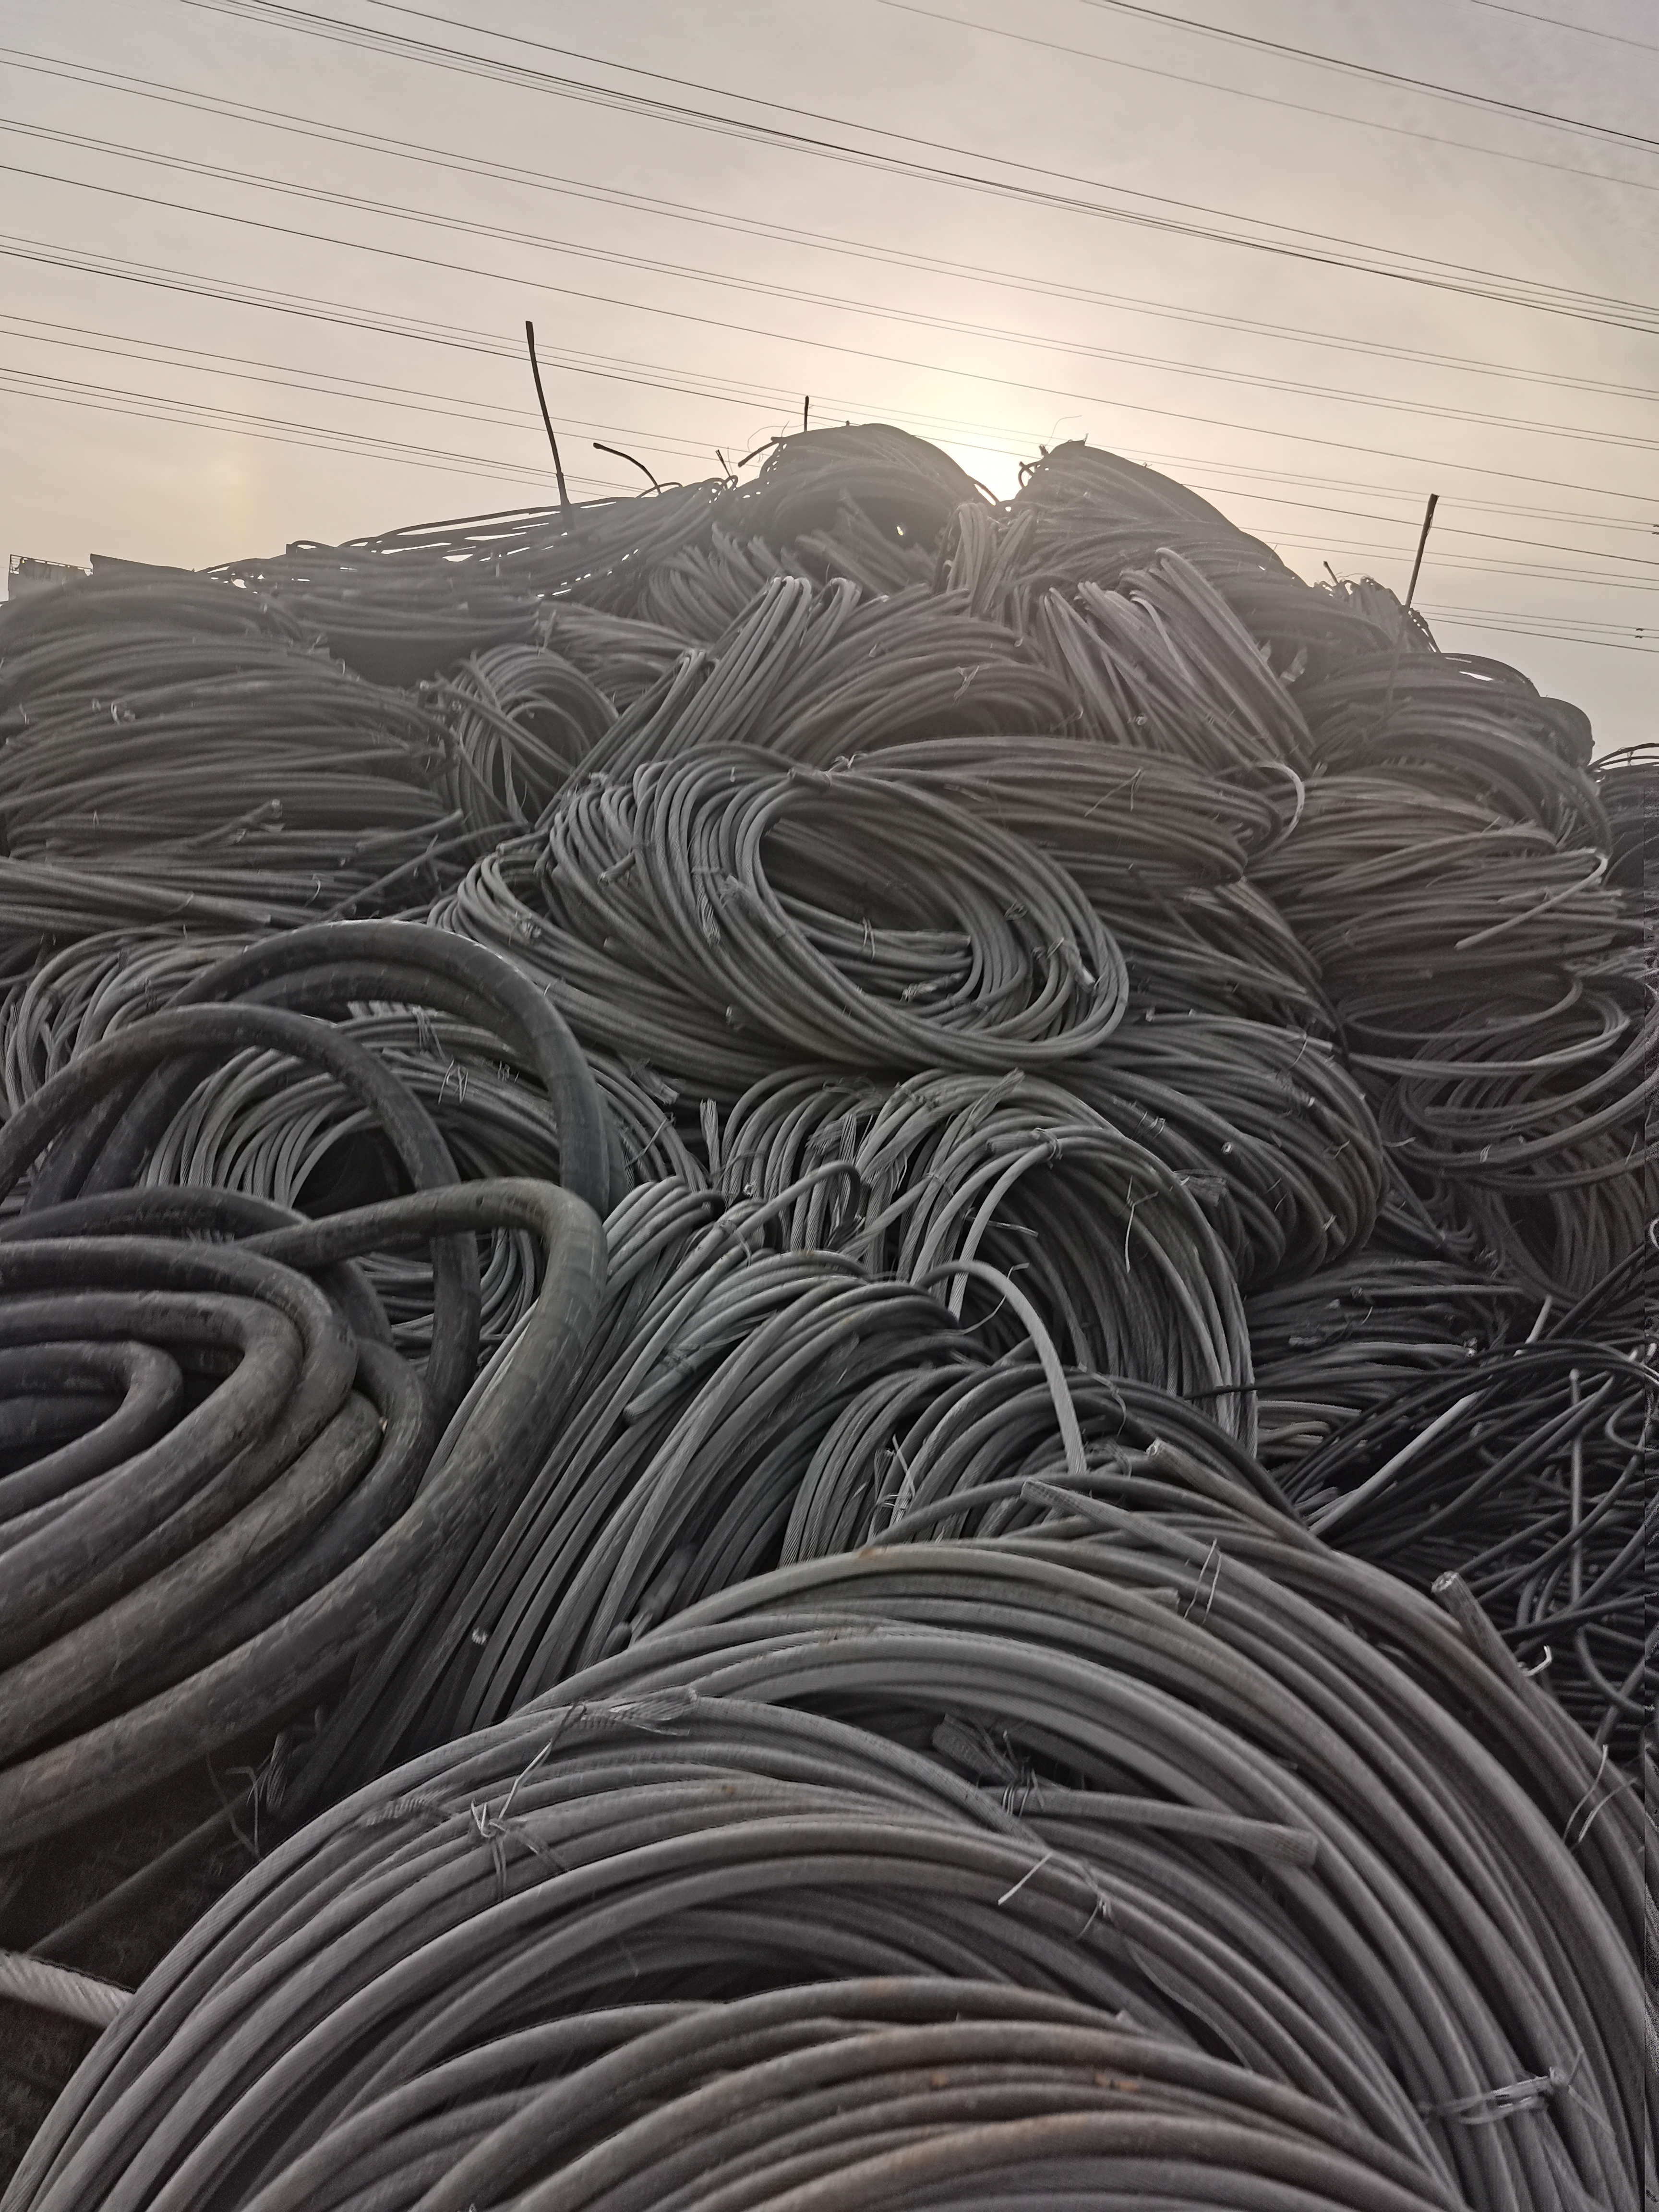 各种电线电缆回收 高压电缆回收团队